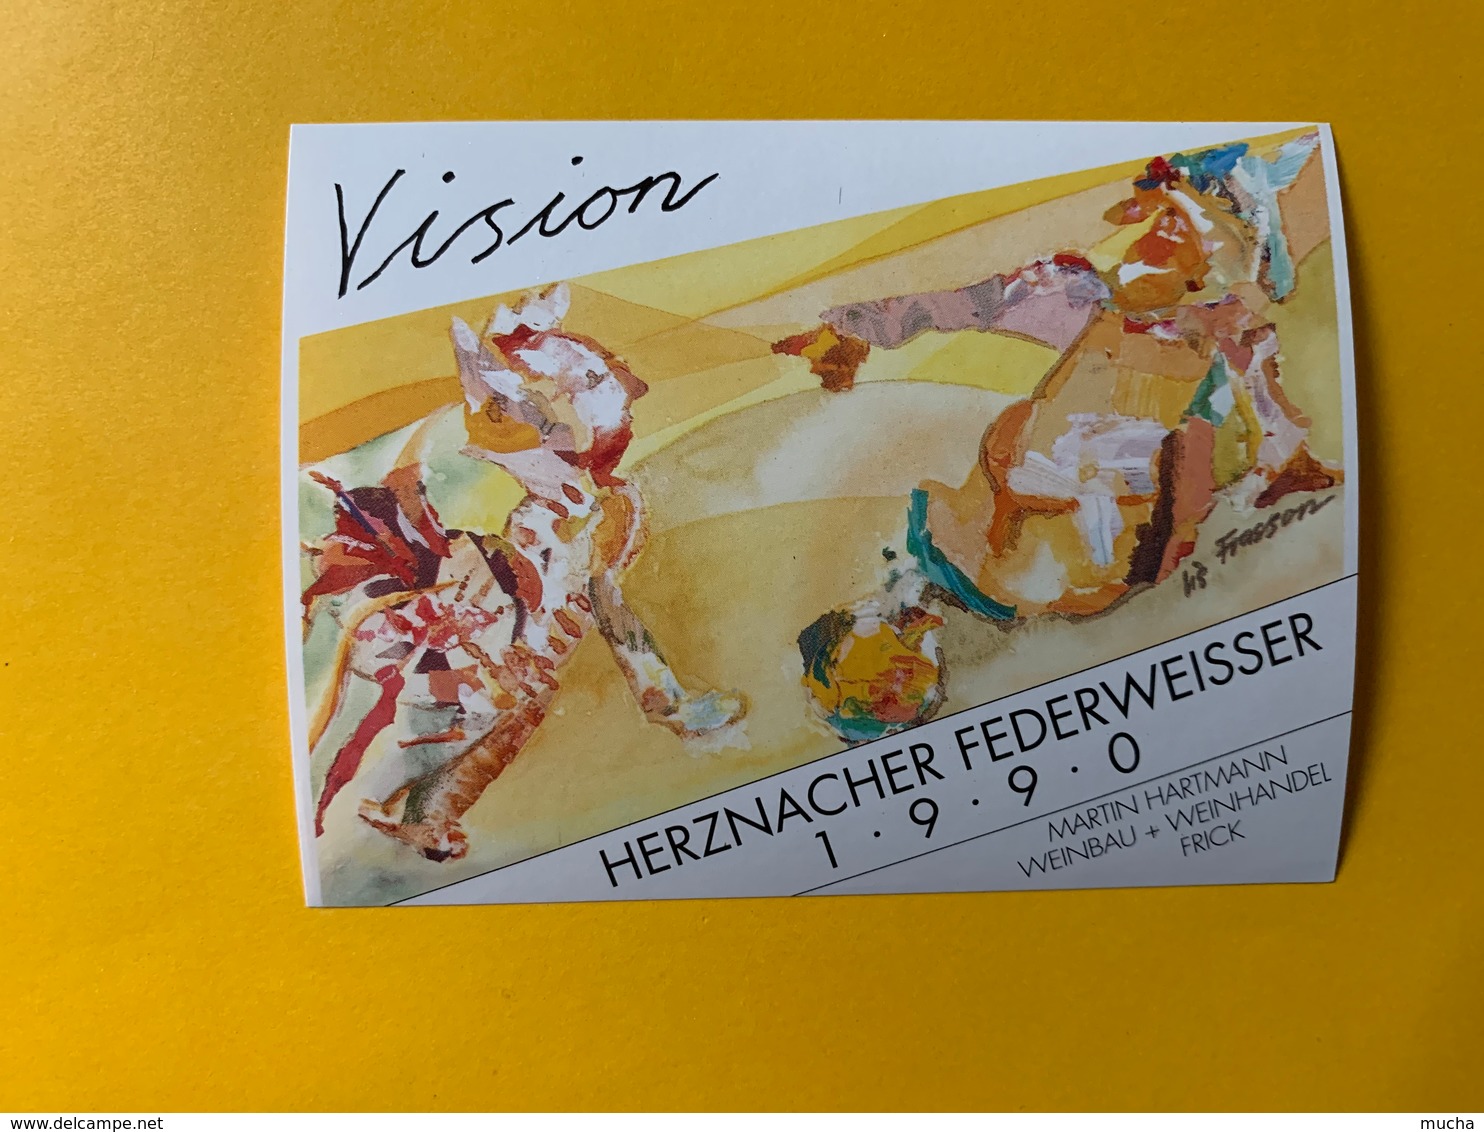 13736 - Vision Herznacher Federweisser 1990 - Art